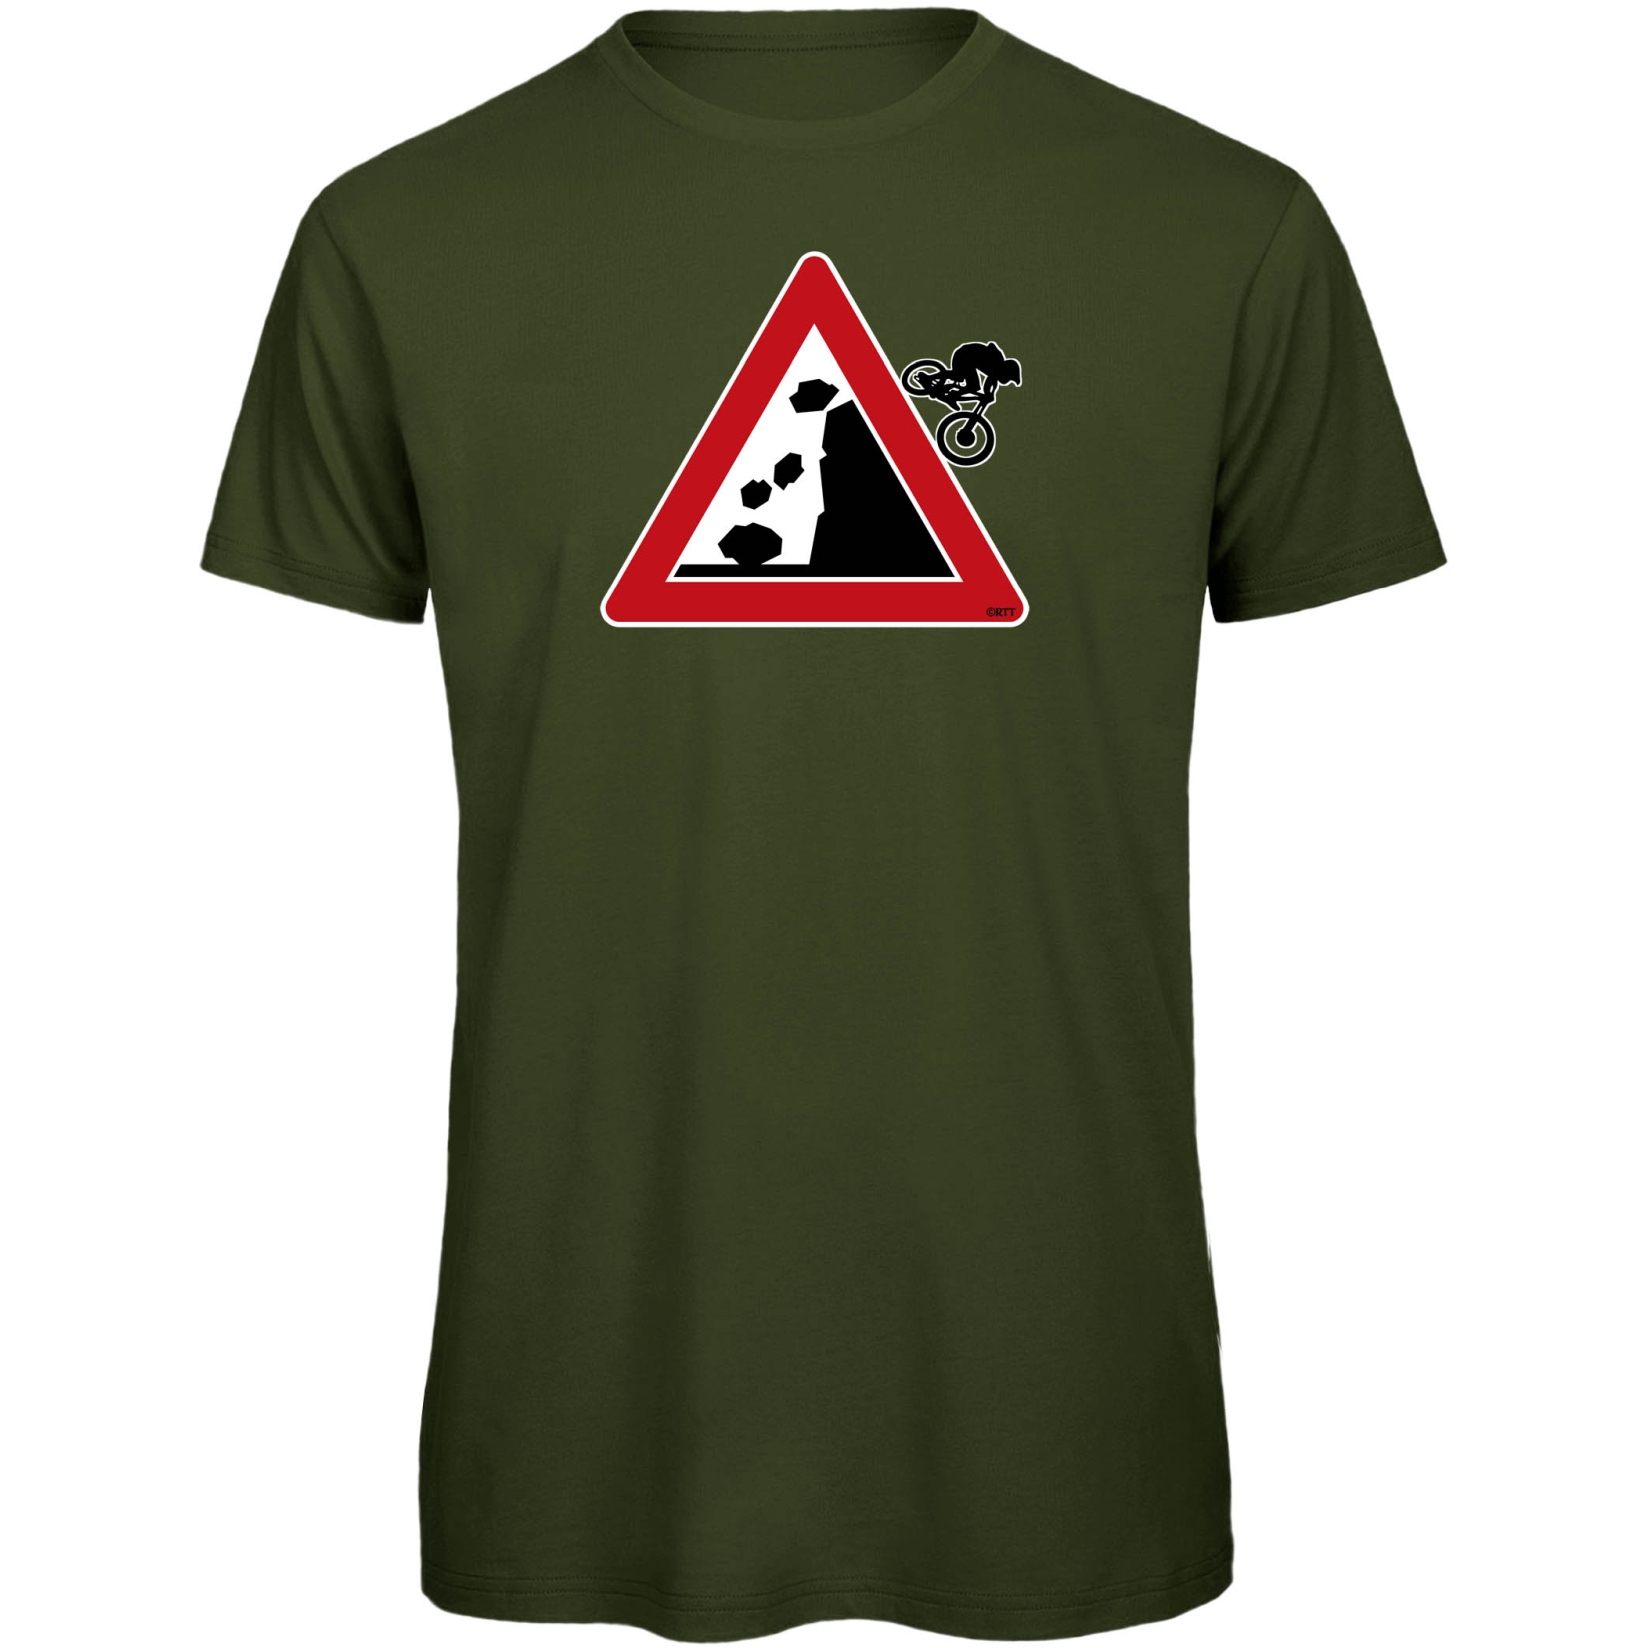 Produktbild von RTTshirts Fahrrad T-Shirt Downhiller - khaki